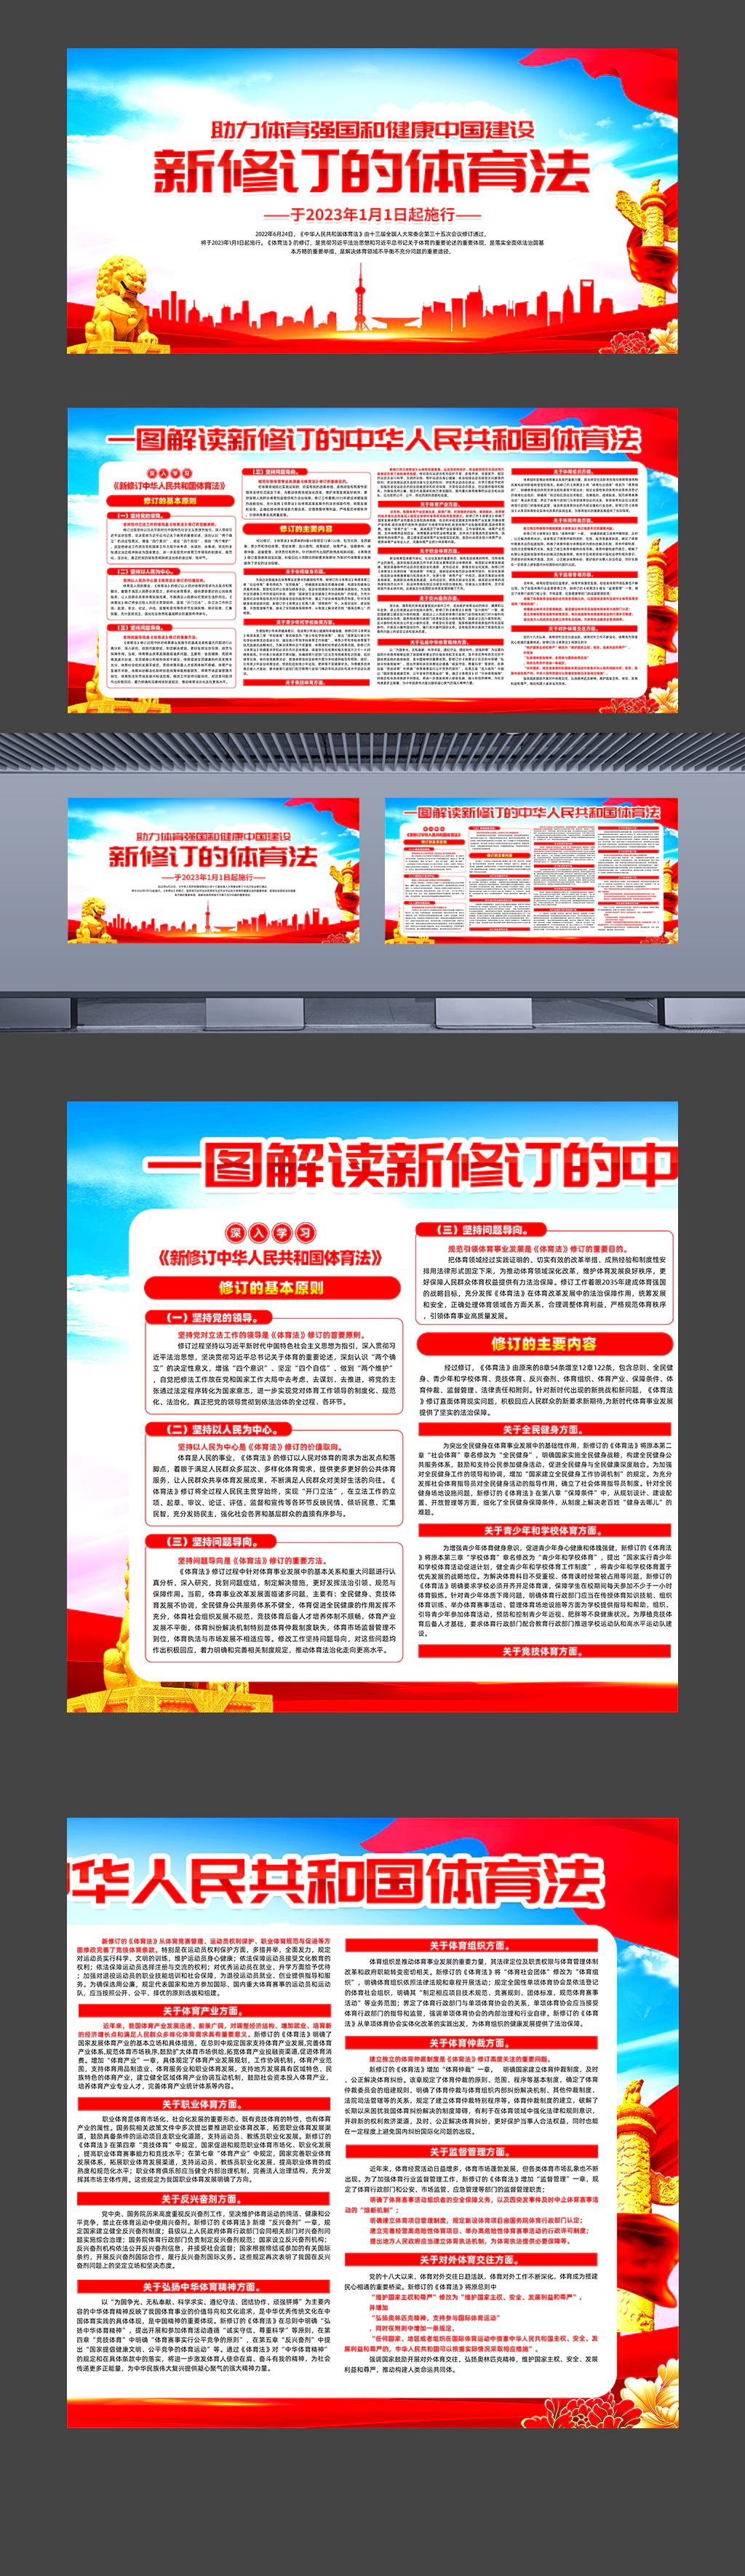 一图解读新修订的中华人民共和国体育法横版宣传展板